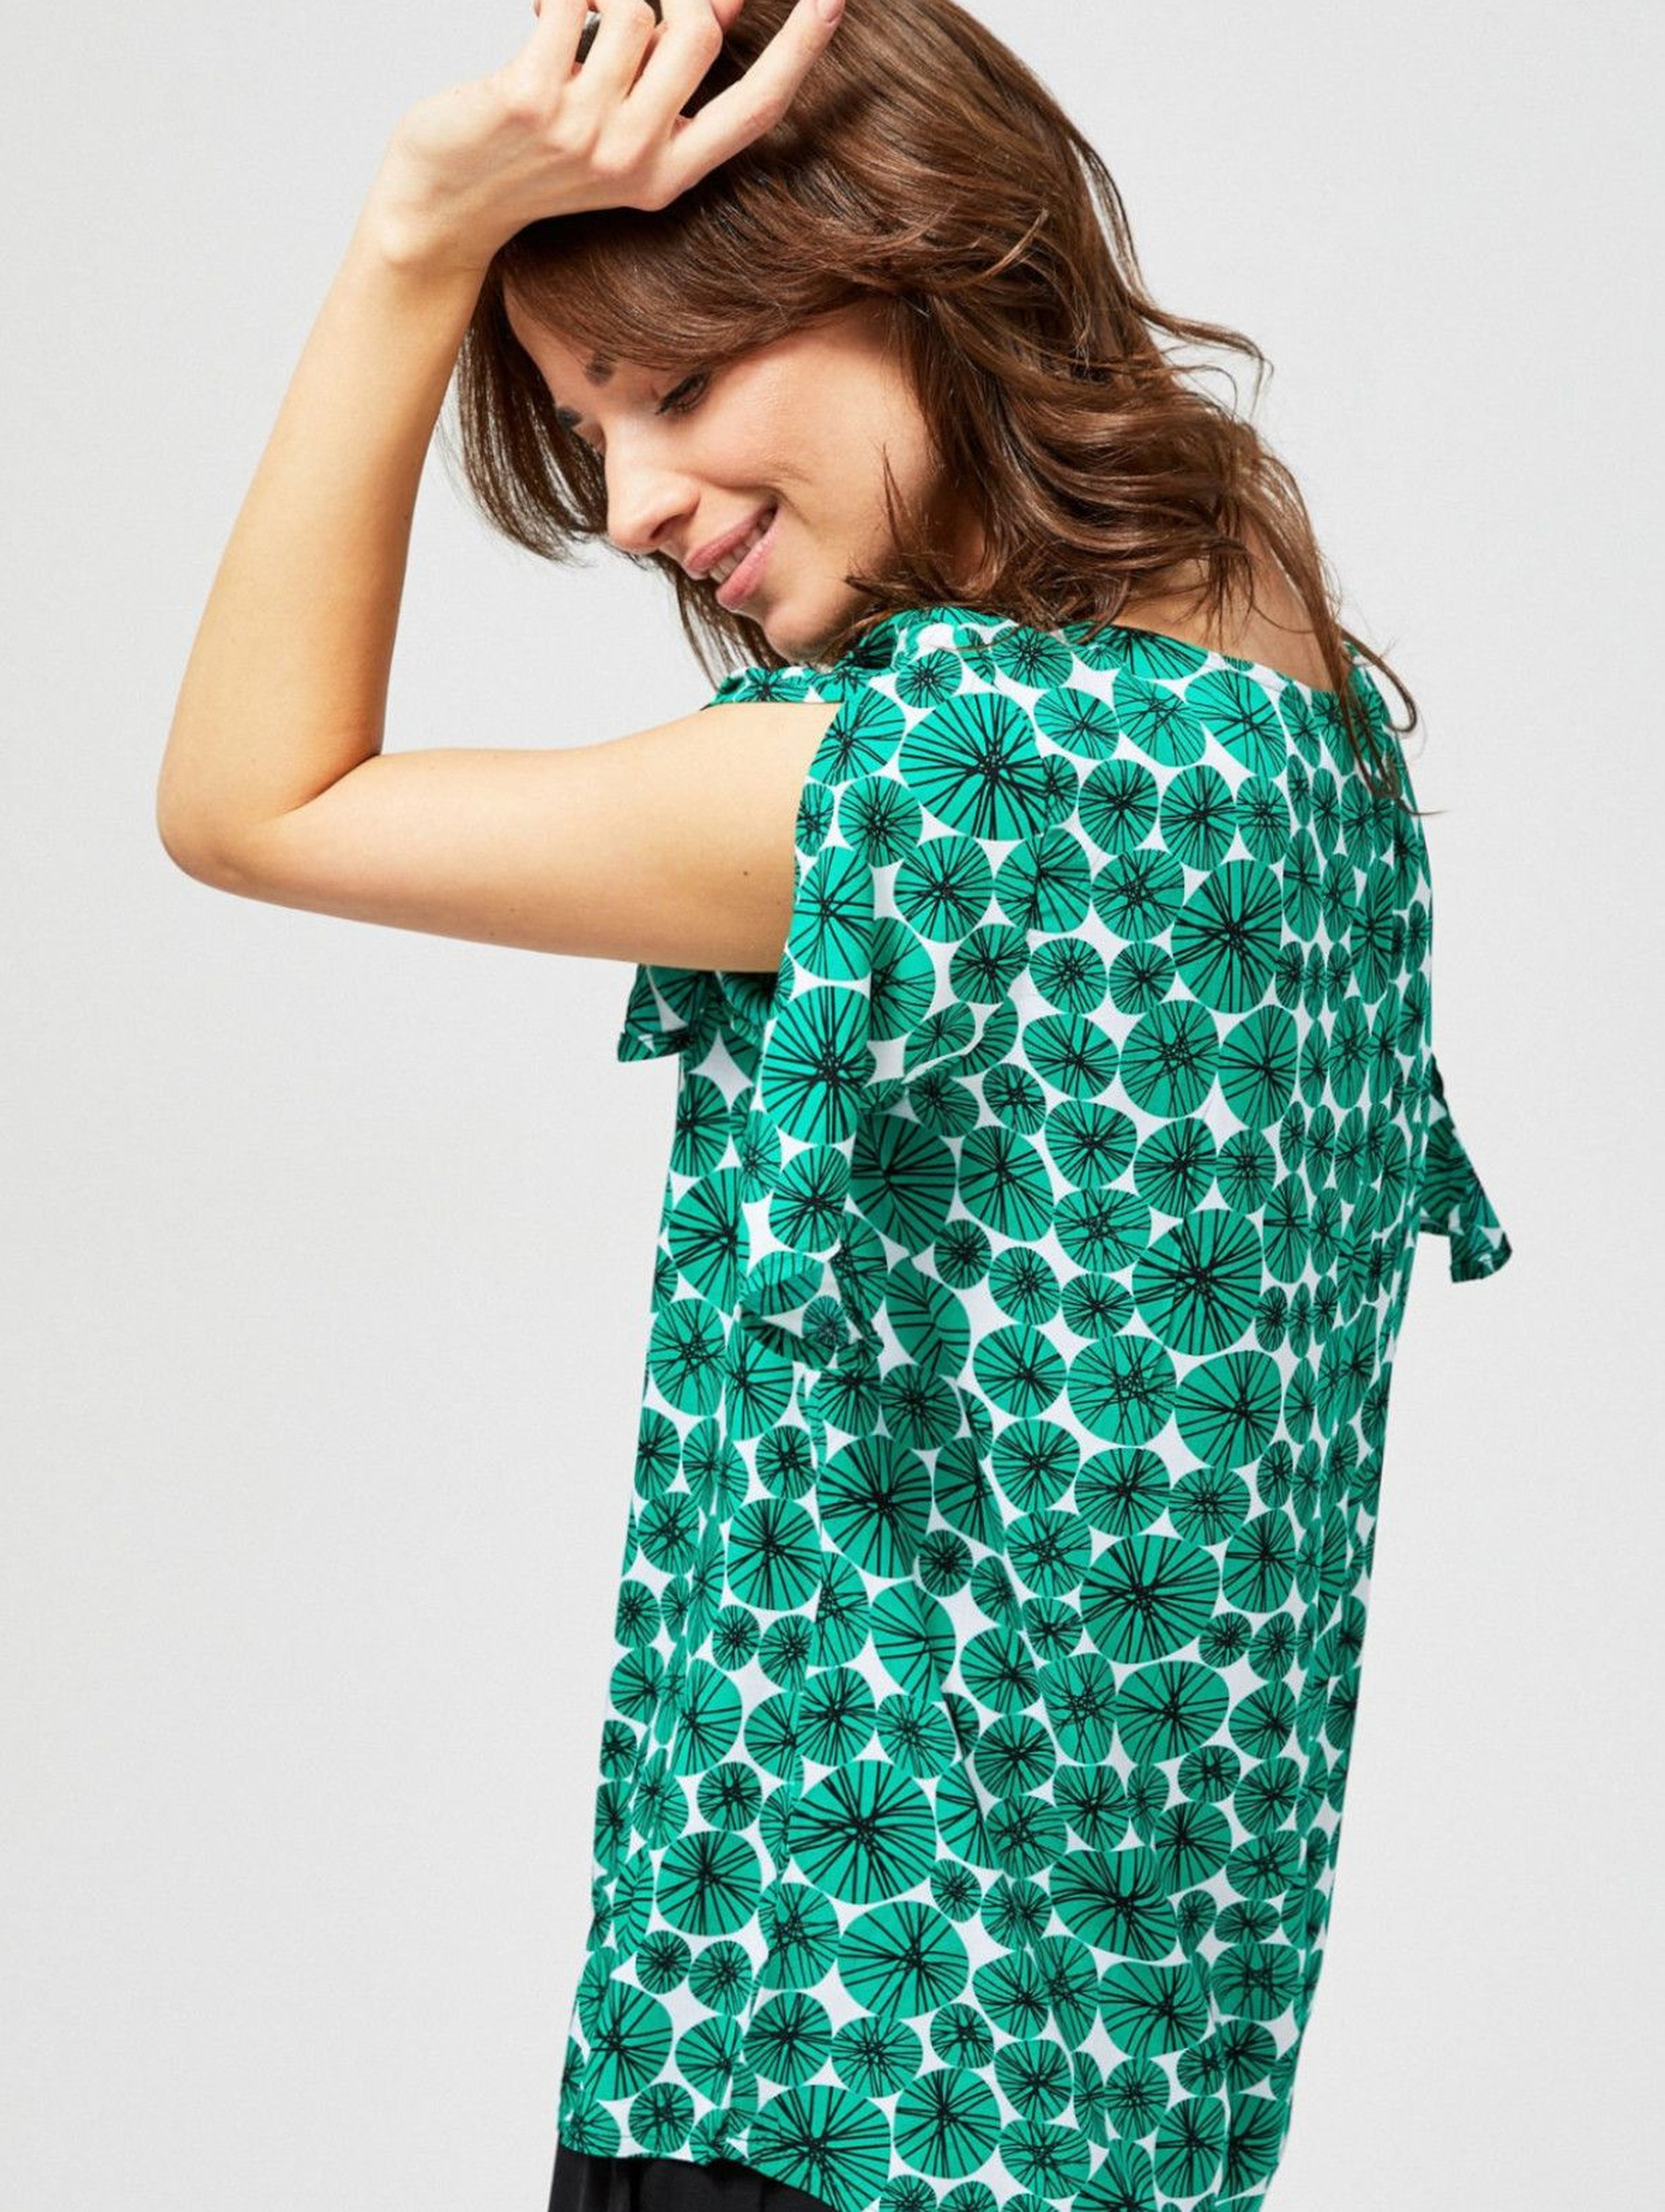 Bluzka damska koszulowa z rozcięciami przy rękawach zielona